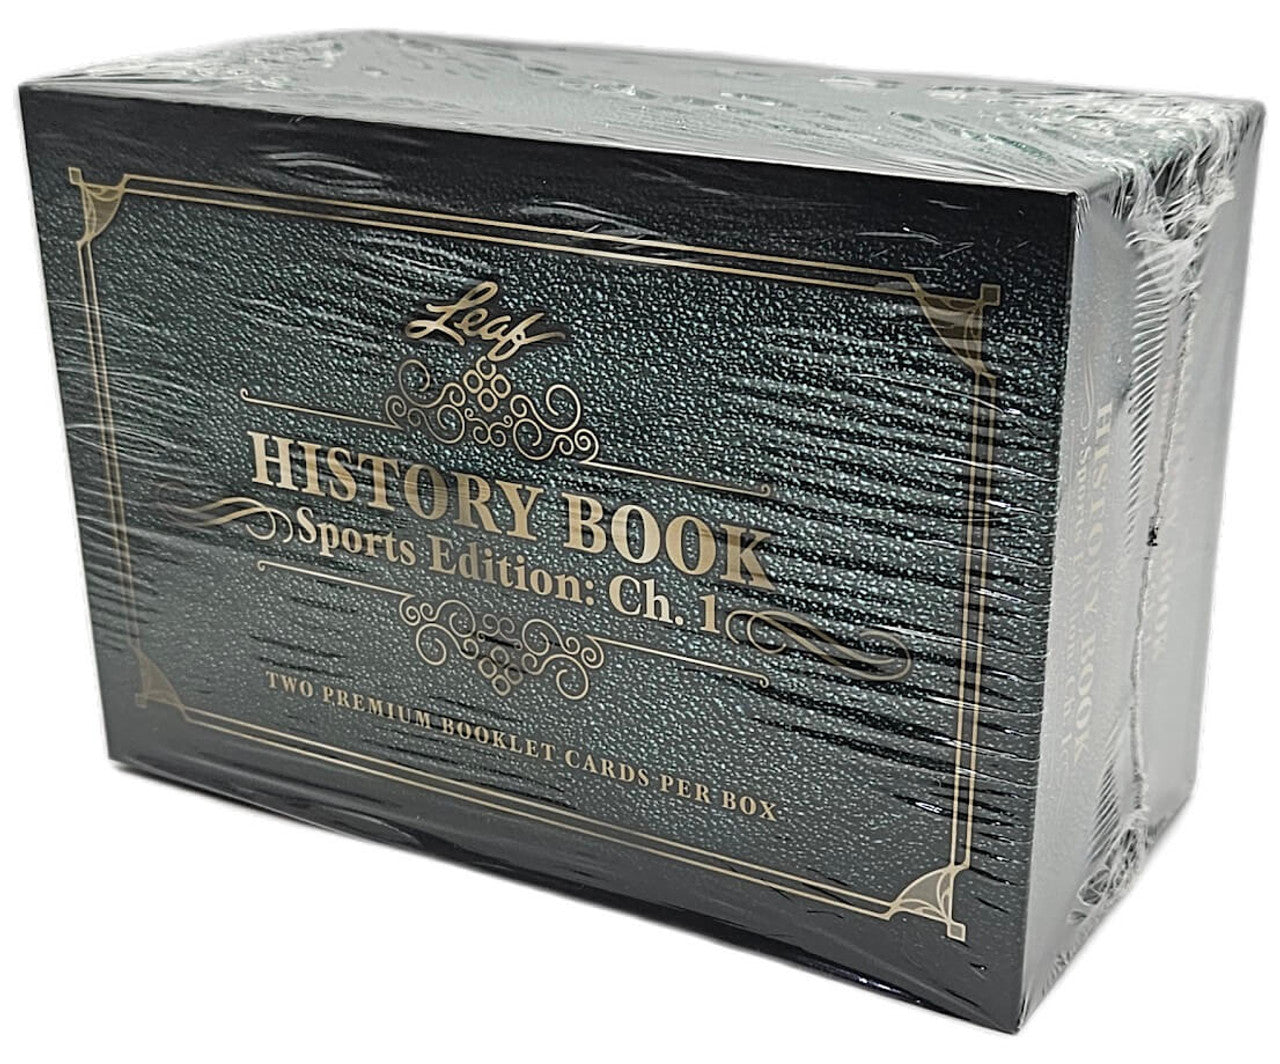 2023 Leaf History Book Edición deportiva: Capítulo 1, Hobby Box